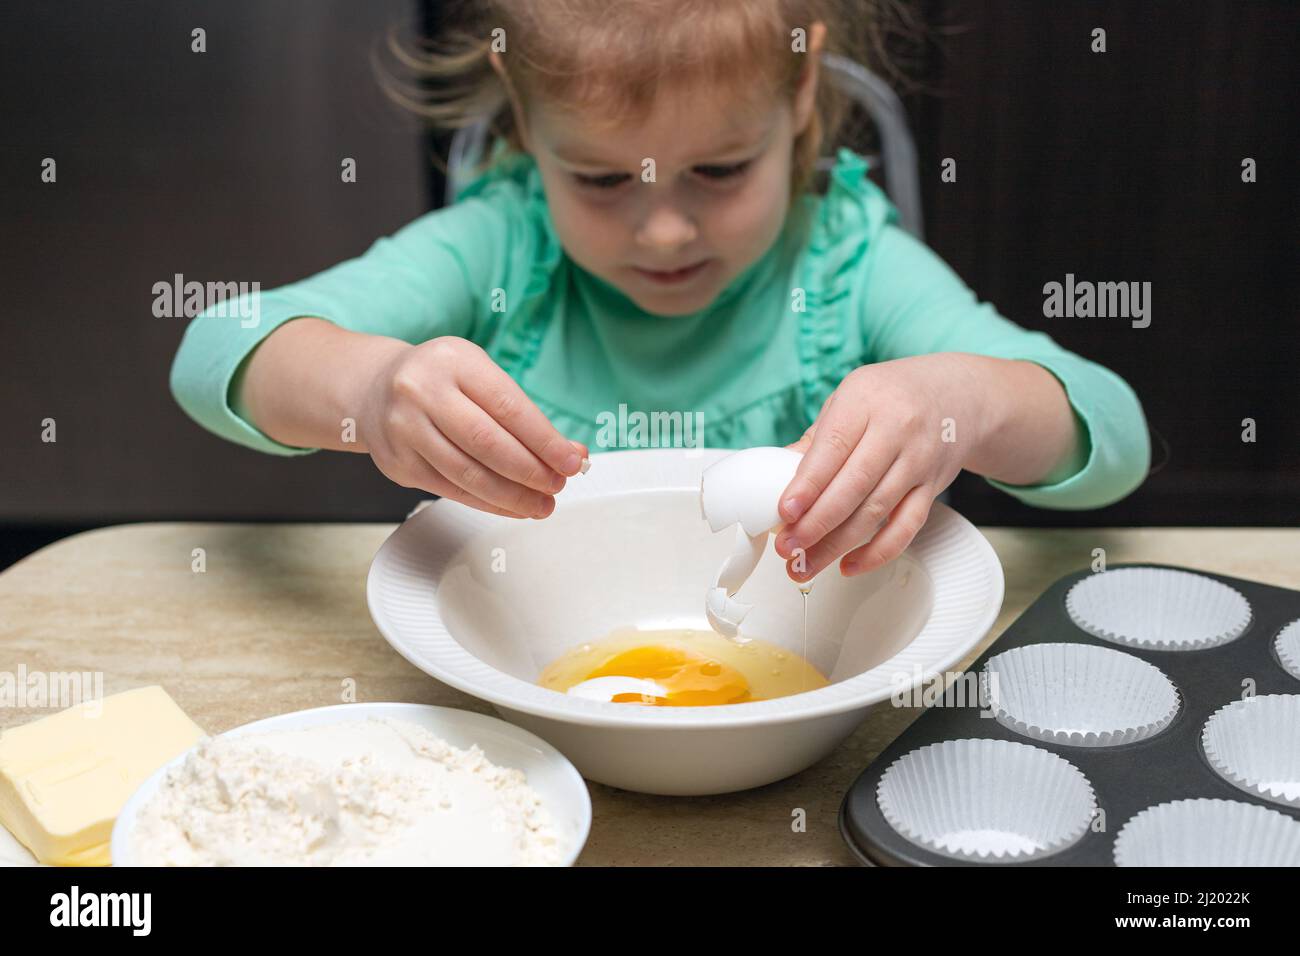 Pequeña niña cocinando en la cocina. Niño sentado en la mesa con comida. Los niños cocinan en casa, aprenden a cocinar muffins, rompiendo el huevo en el tazón. Foto de stock